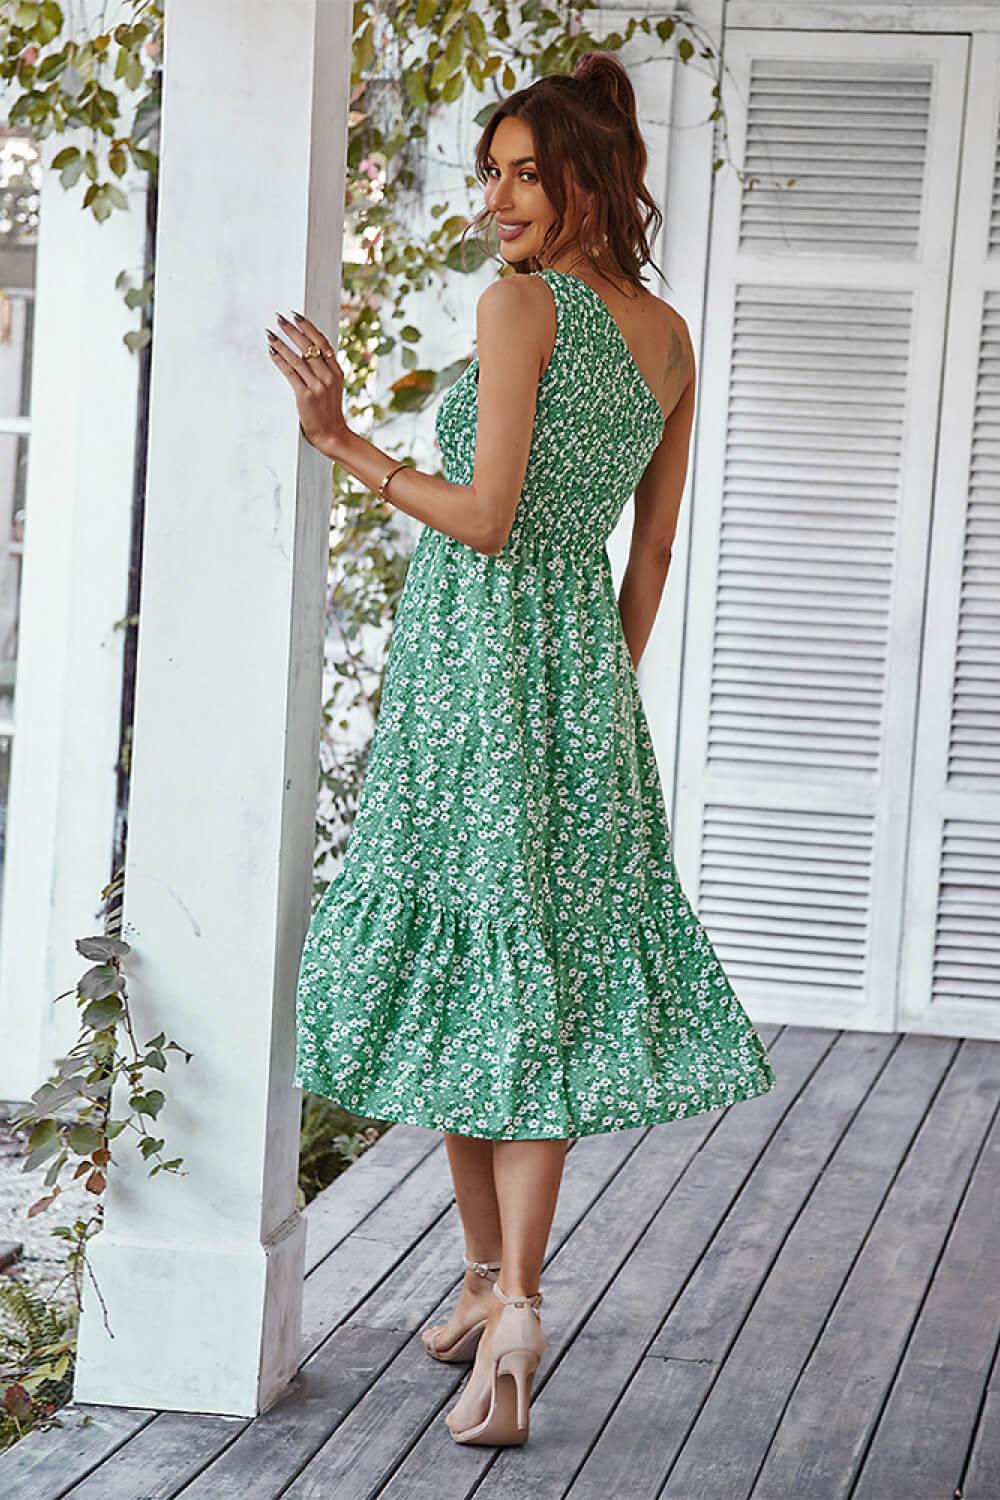 Ditsy Floral Smocked One-Shoulder Dress - Flyclothing LLC